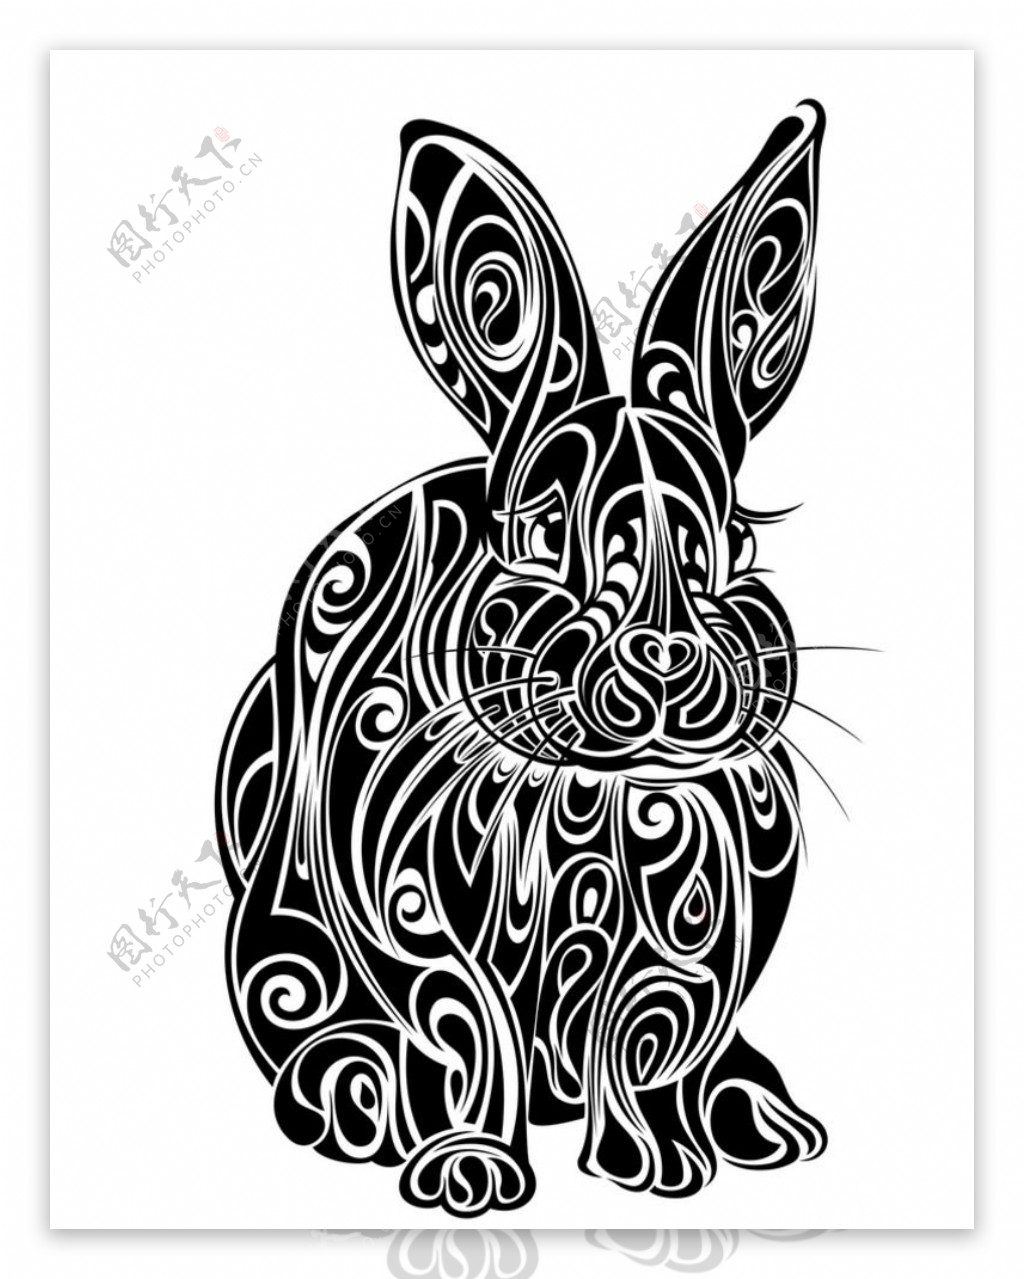 黑白剪影矢量素材图案兔子